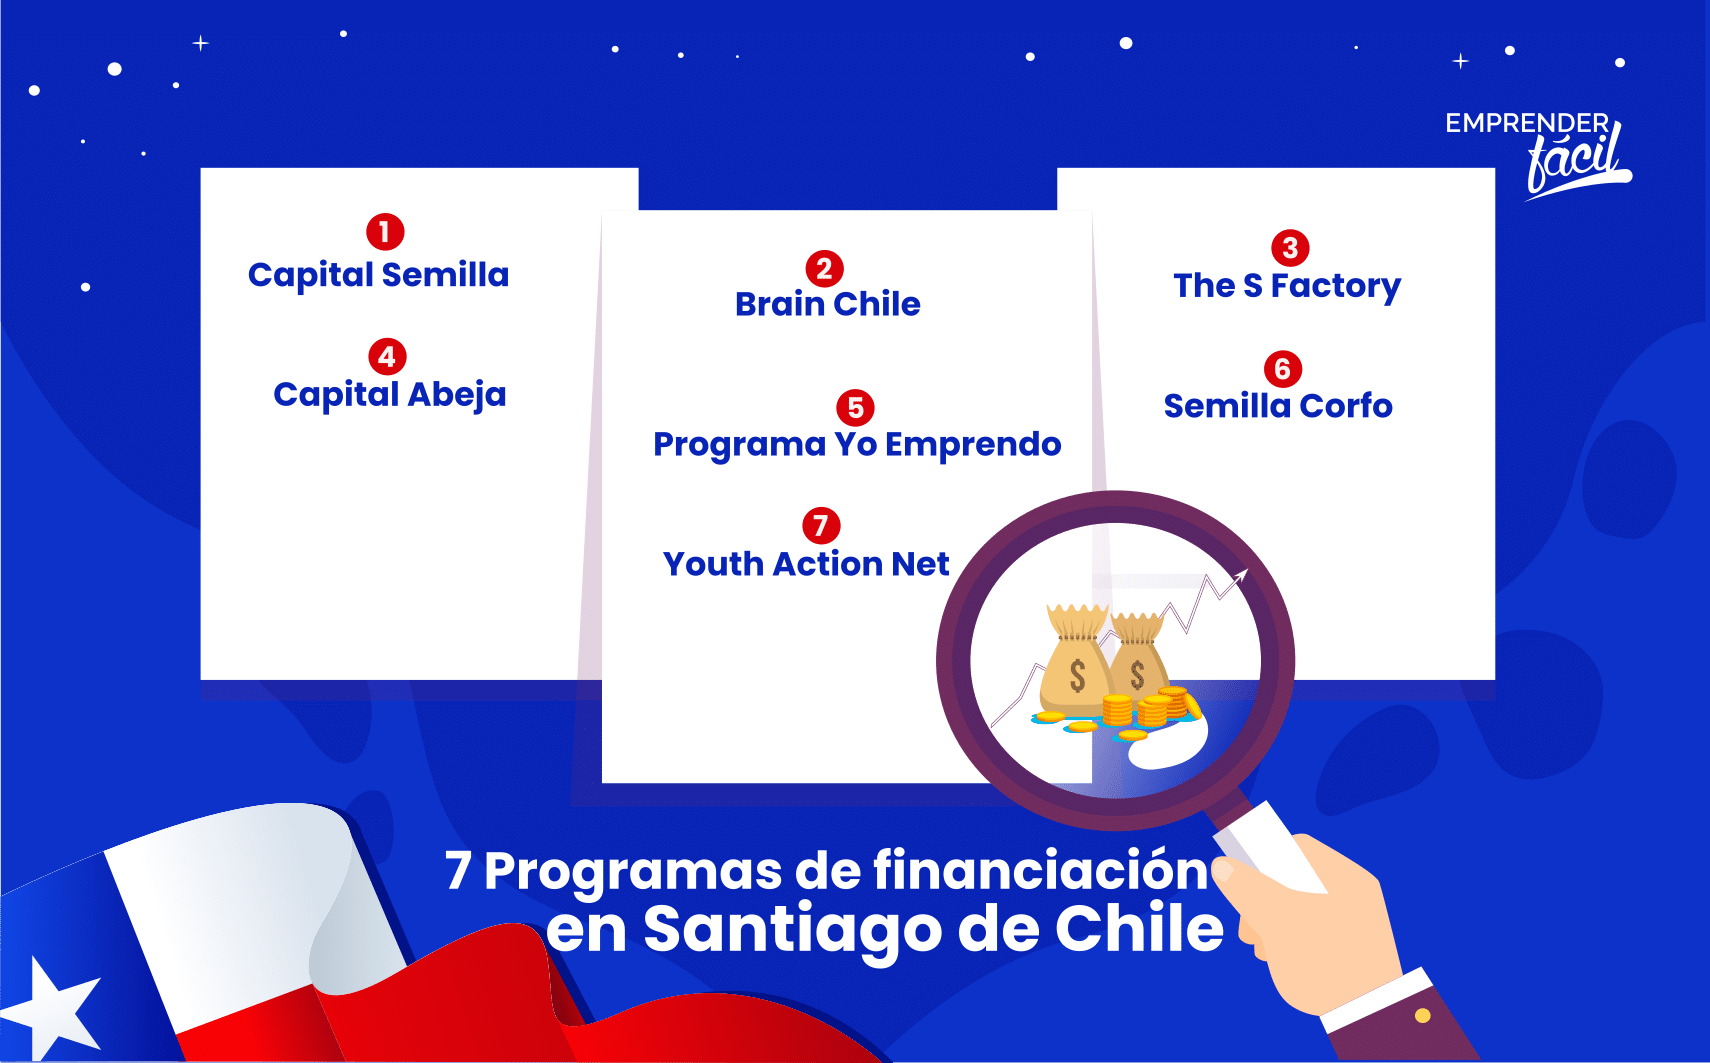 Asesoría y capital para los emprendedores en Santiago de Chile